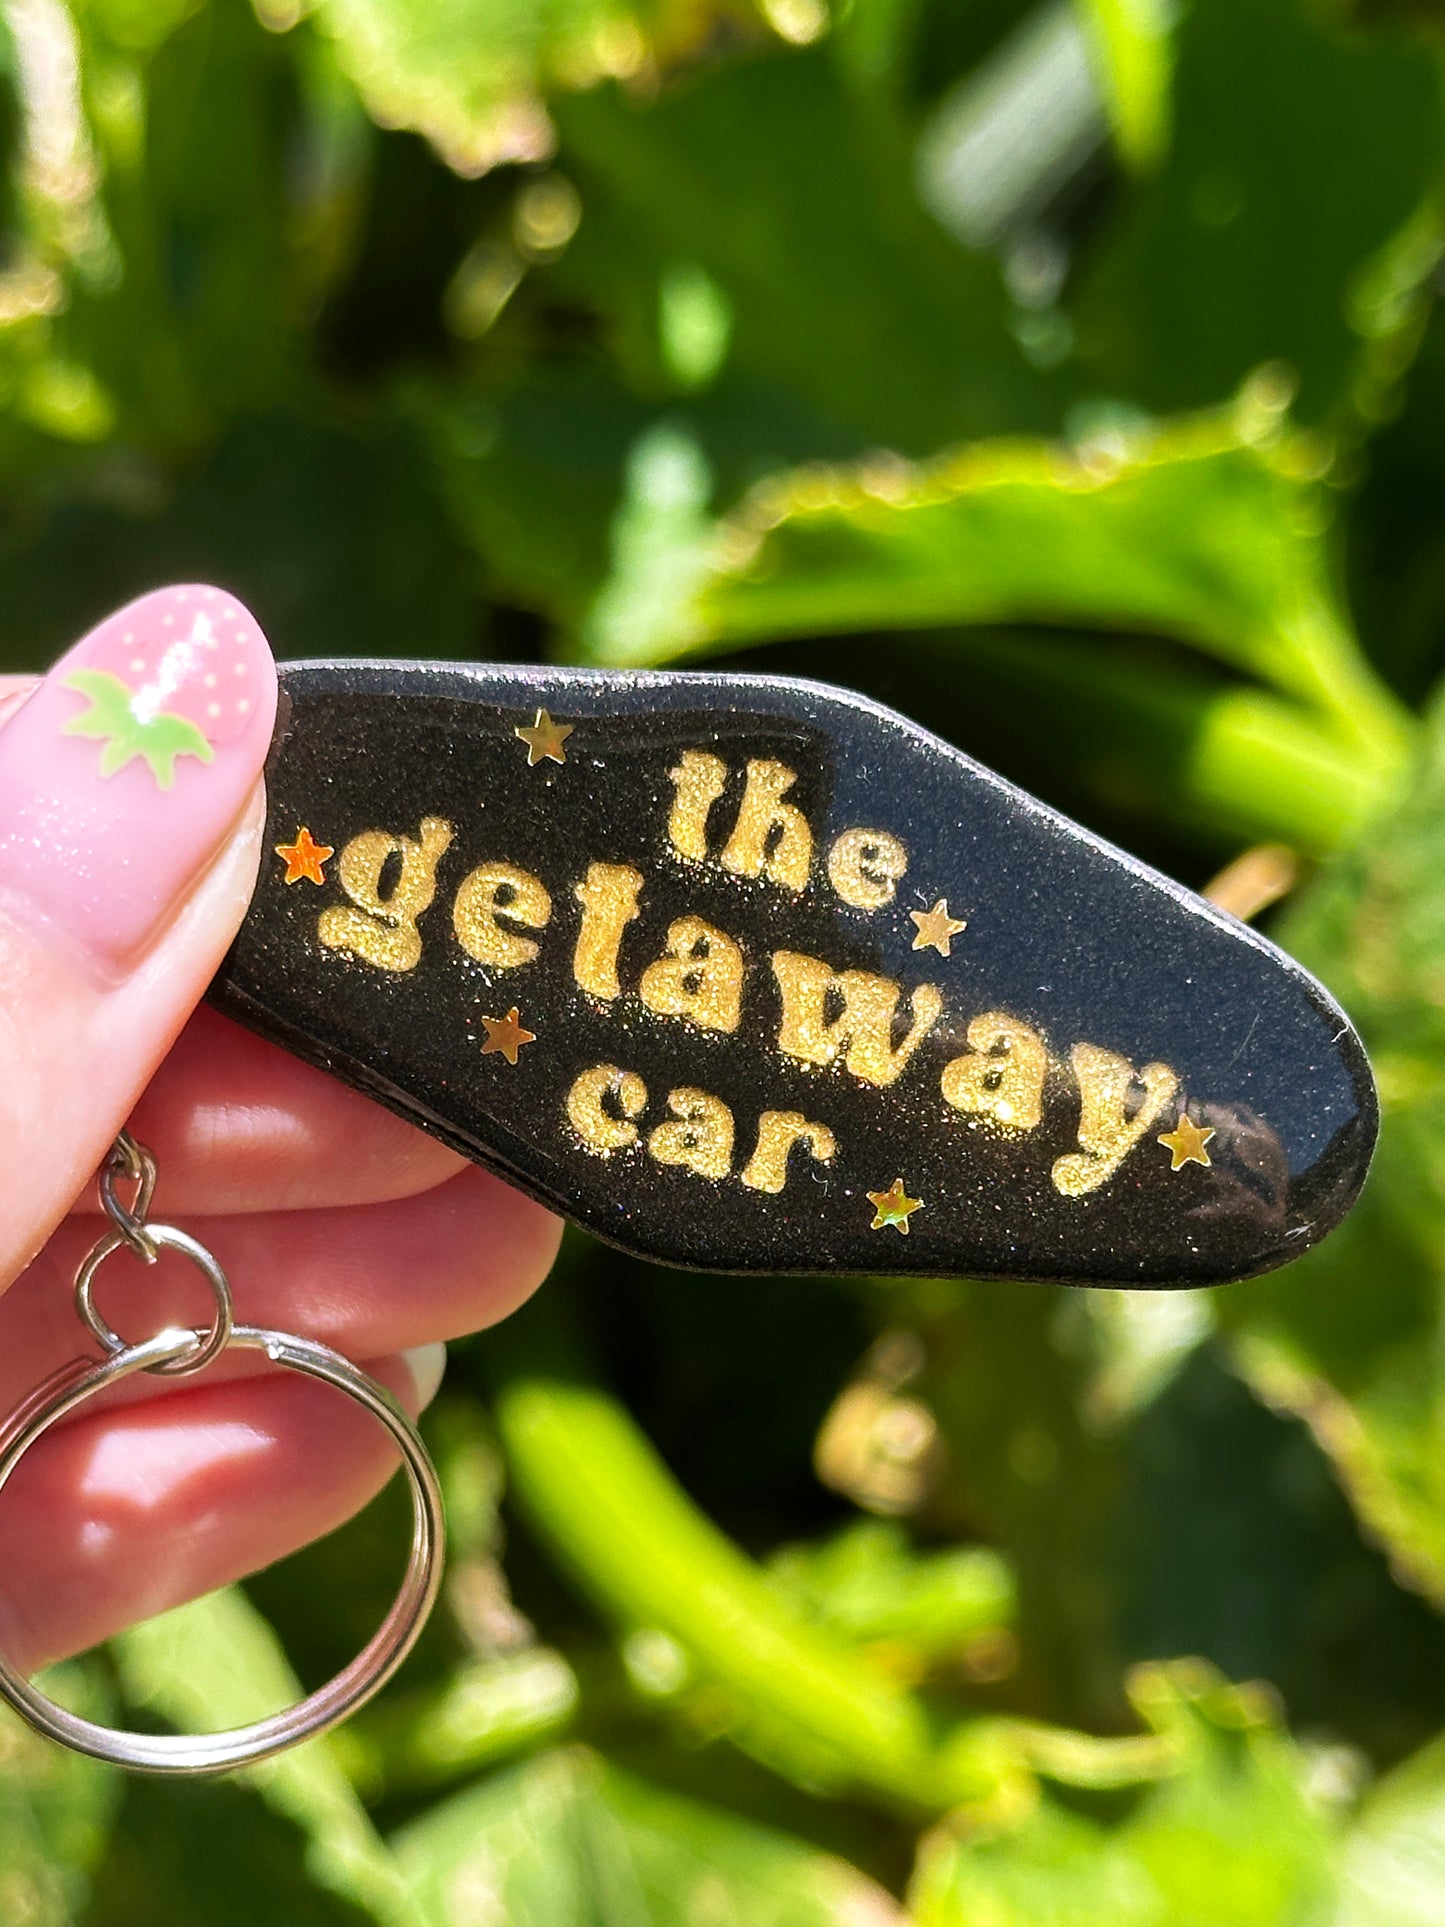 Getaway Car Keychain